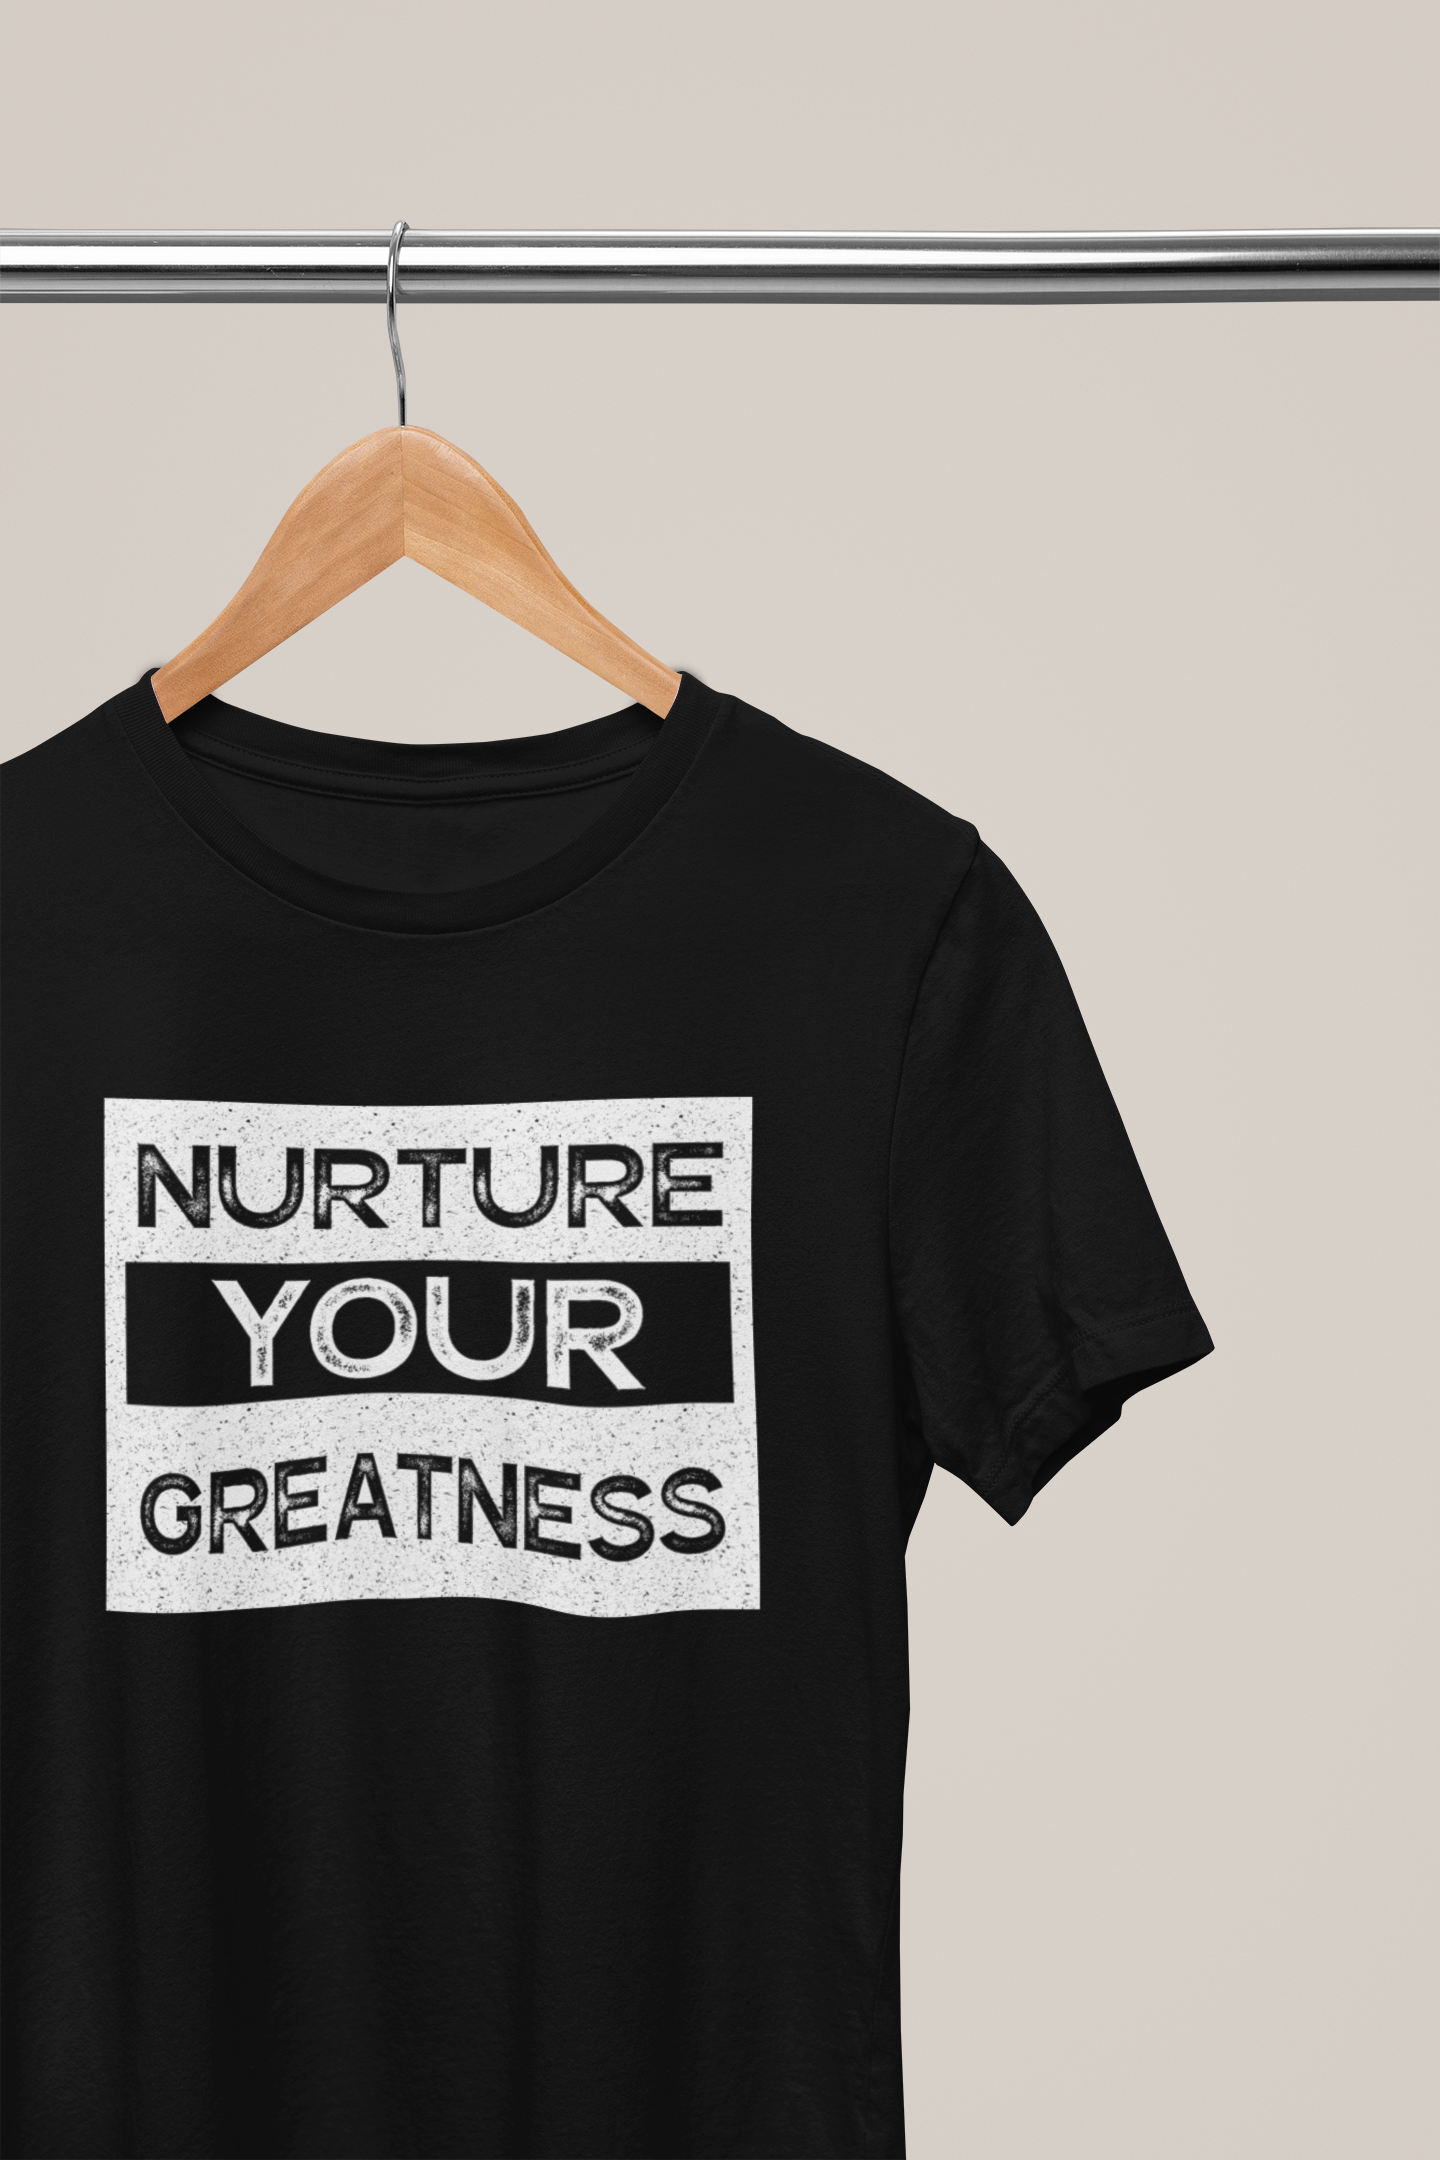 Nurture Your Greatness, Hoodies, Sweatshirts, Tees, and Mugs